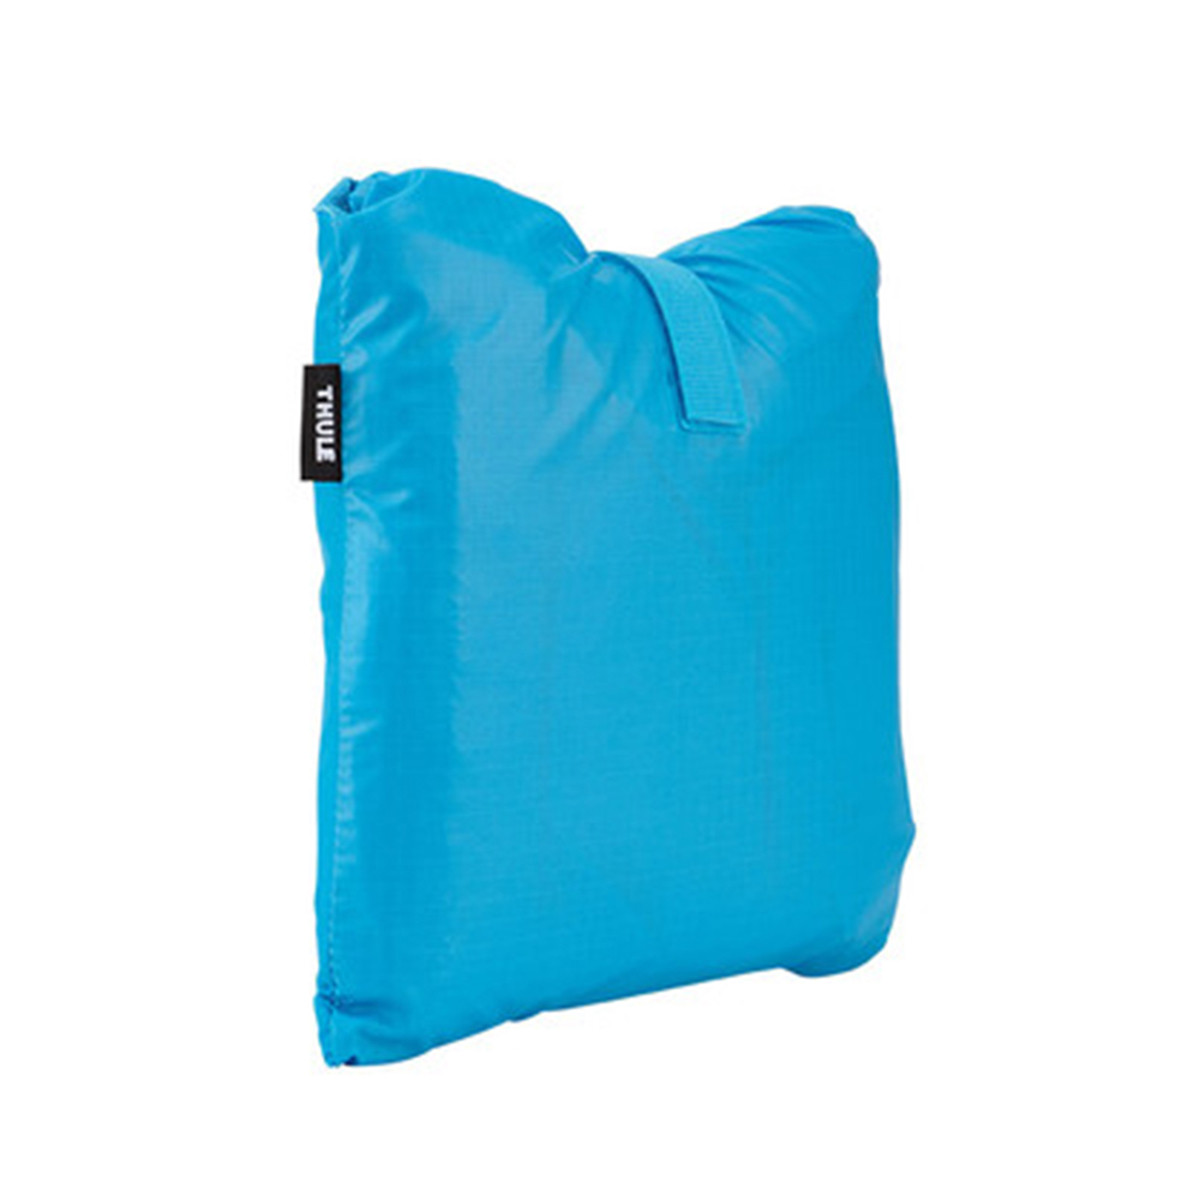 Husa de protectie ploaie pentru rucsacuri transport copii, Thule, Sapling Child Carrier, Albastru